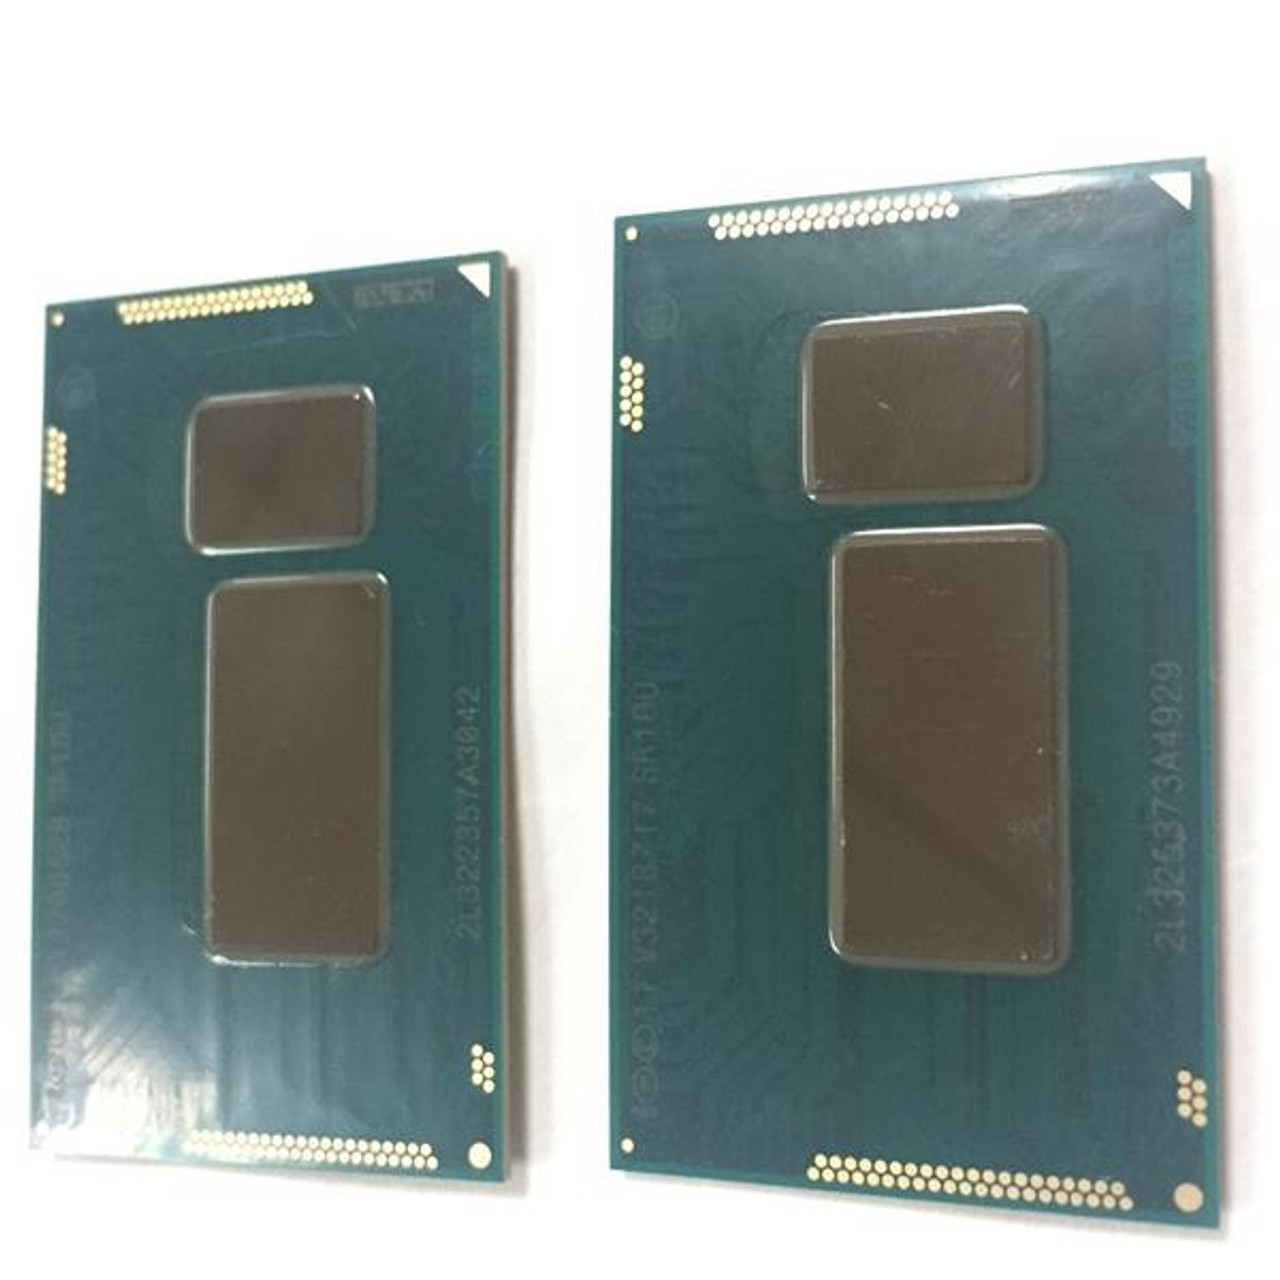 i7-5600U Intel Core i7 Dual Core 2.60GHz 5.00GT/s DMI2 4MB L3 Cache Mobile Processor